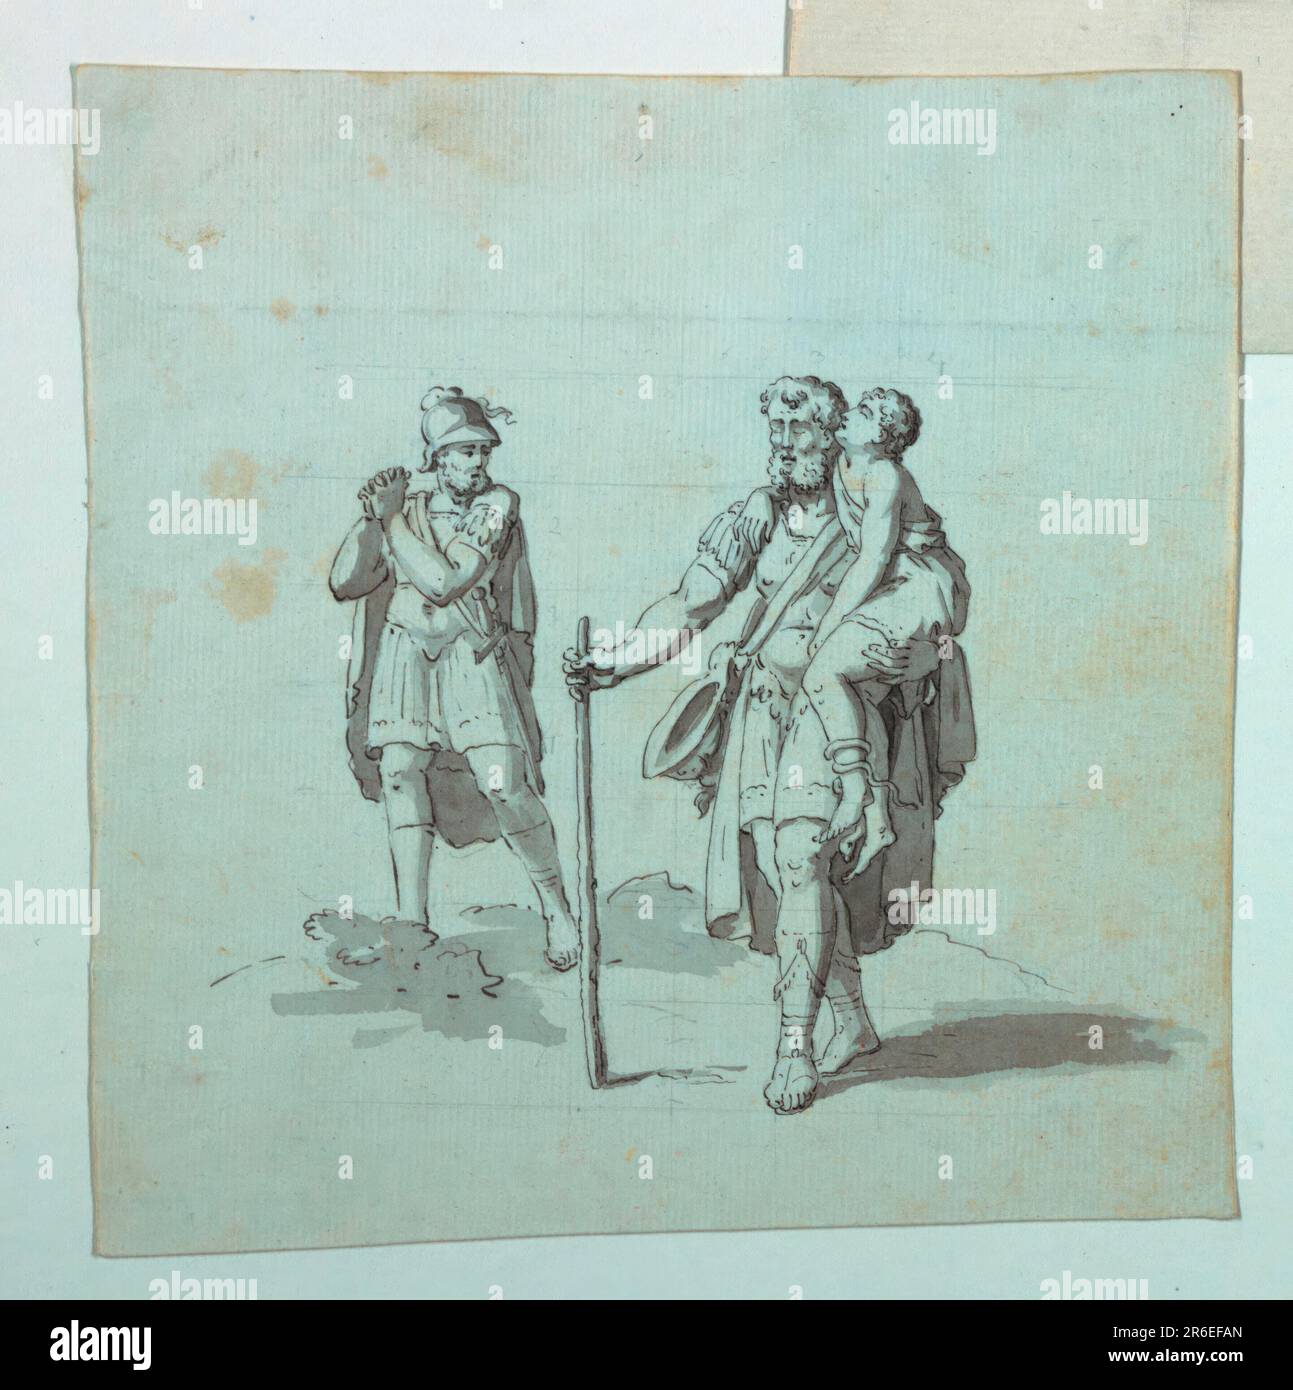 Skizzieren Sie eine Insel für einen Cartoon für Baumwolldruck, der einen blinden Soldaten zeigt, Stab in der Hand, der einen Jungen am linken Arm hält, während ein anderer Soldat in der Nähe seine Qual ausdrückt. (Wahrscheinlich eine ungenutzte Insel für ein Belisarius-Subjekt; die Insel zeigt, dass der blinde Belisarius von einem seiner Soldaten erkannt wird.) Datum: Ca. 1820. Stift und Tinte mit grauer Wäsche auf Papier. Museum: Cooper Hewitt, Smithsonian Design Museum. Stockfoto